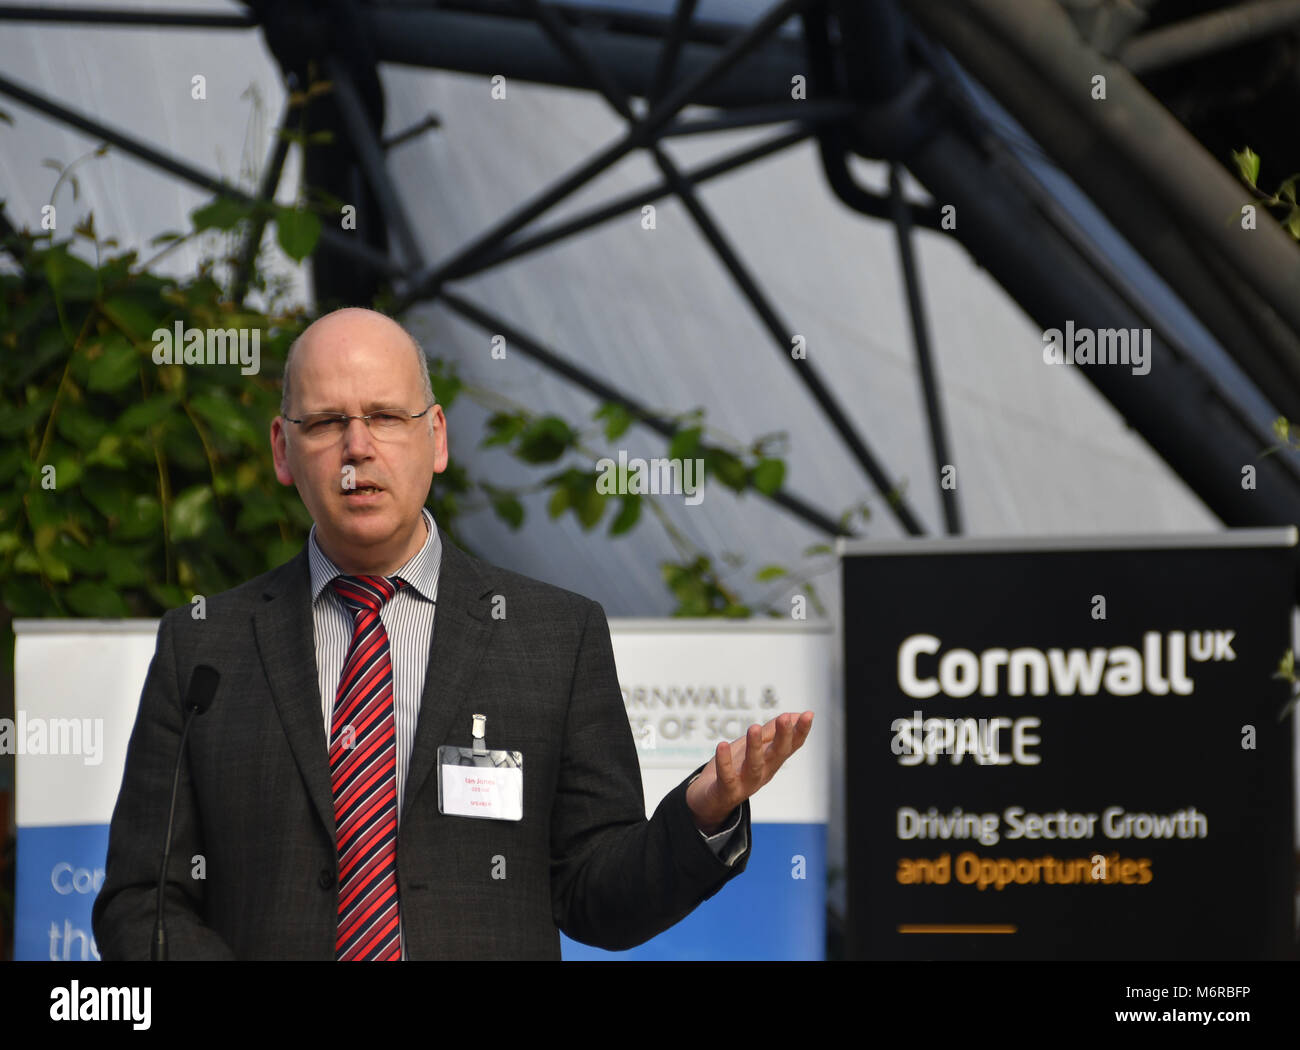 Eden Project, Cornwall Regno Unito. Il 6 marzo 2018. Ian Jones, CEO di Goonhilly in groppa la stazione di terra, era uno dei relatori in occasione di una conferenza per discutere il futuro del settore spaziale in Cornovaglia. Ian è visto qui con in mano una stampa dell'intera industria spaziale per data. Altri altoparlanti inclusi miglia Carden, il direttore di Spaceport Cornwall. Il settore spaziale in Cornovaglia potrebbero avere un valore di oltre € 1 miliardi nel 2030 secondo il Cornwall e Isole di Scilly LEP. Credito: Simon Maycock/Alamy Live News Foto Stock